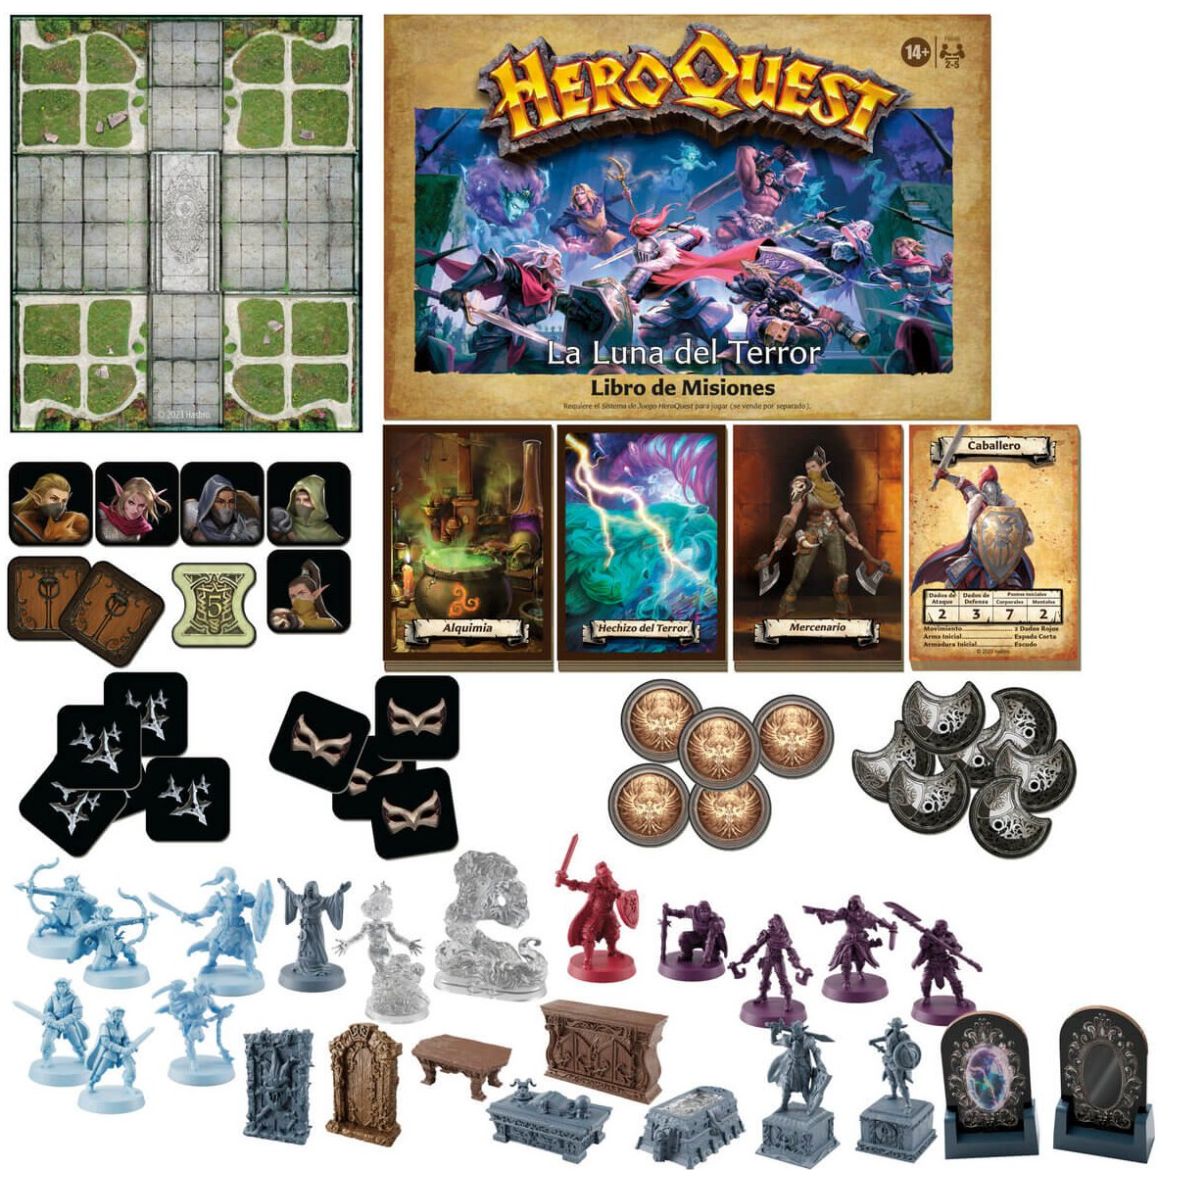 HeroQuest Sistema de Juego juego de mesa en español Hasbro